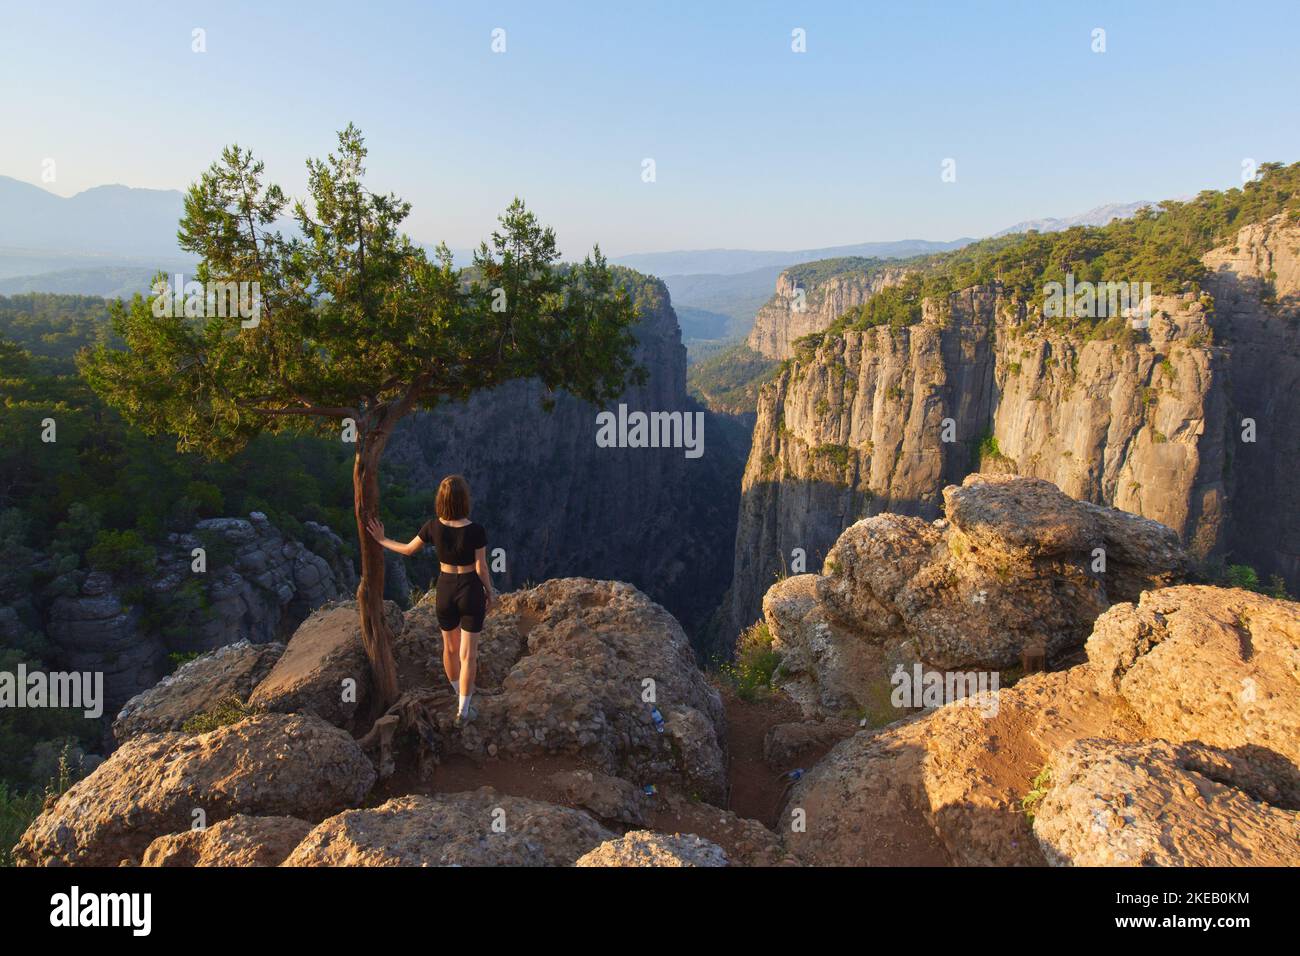 Una bella donna turistica sopra il Tazi Canyon. Paesaggio epico di rocce a strapiombo e scogliere nel parco nazionale turco Foto Stock